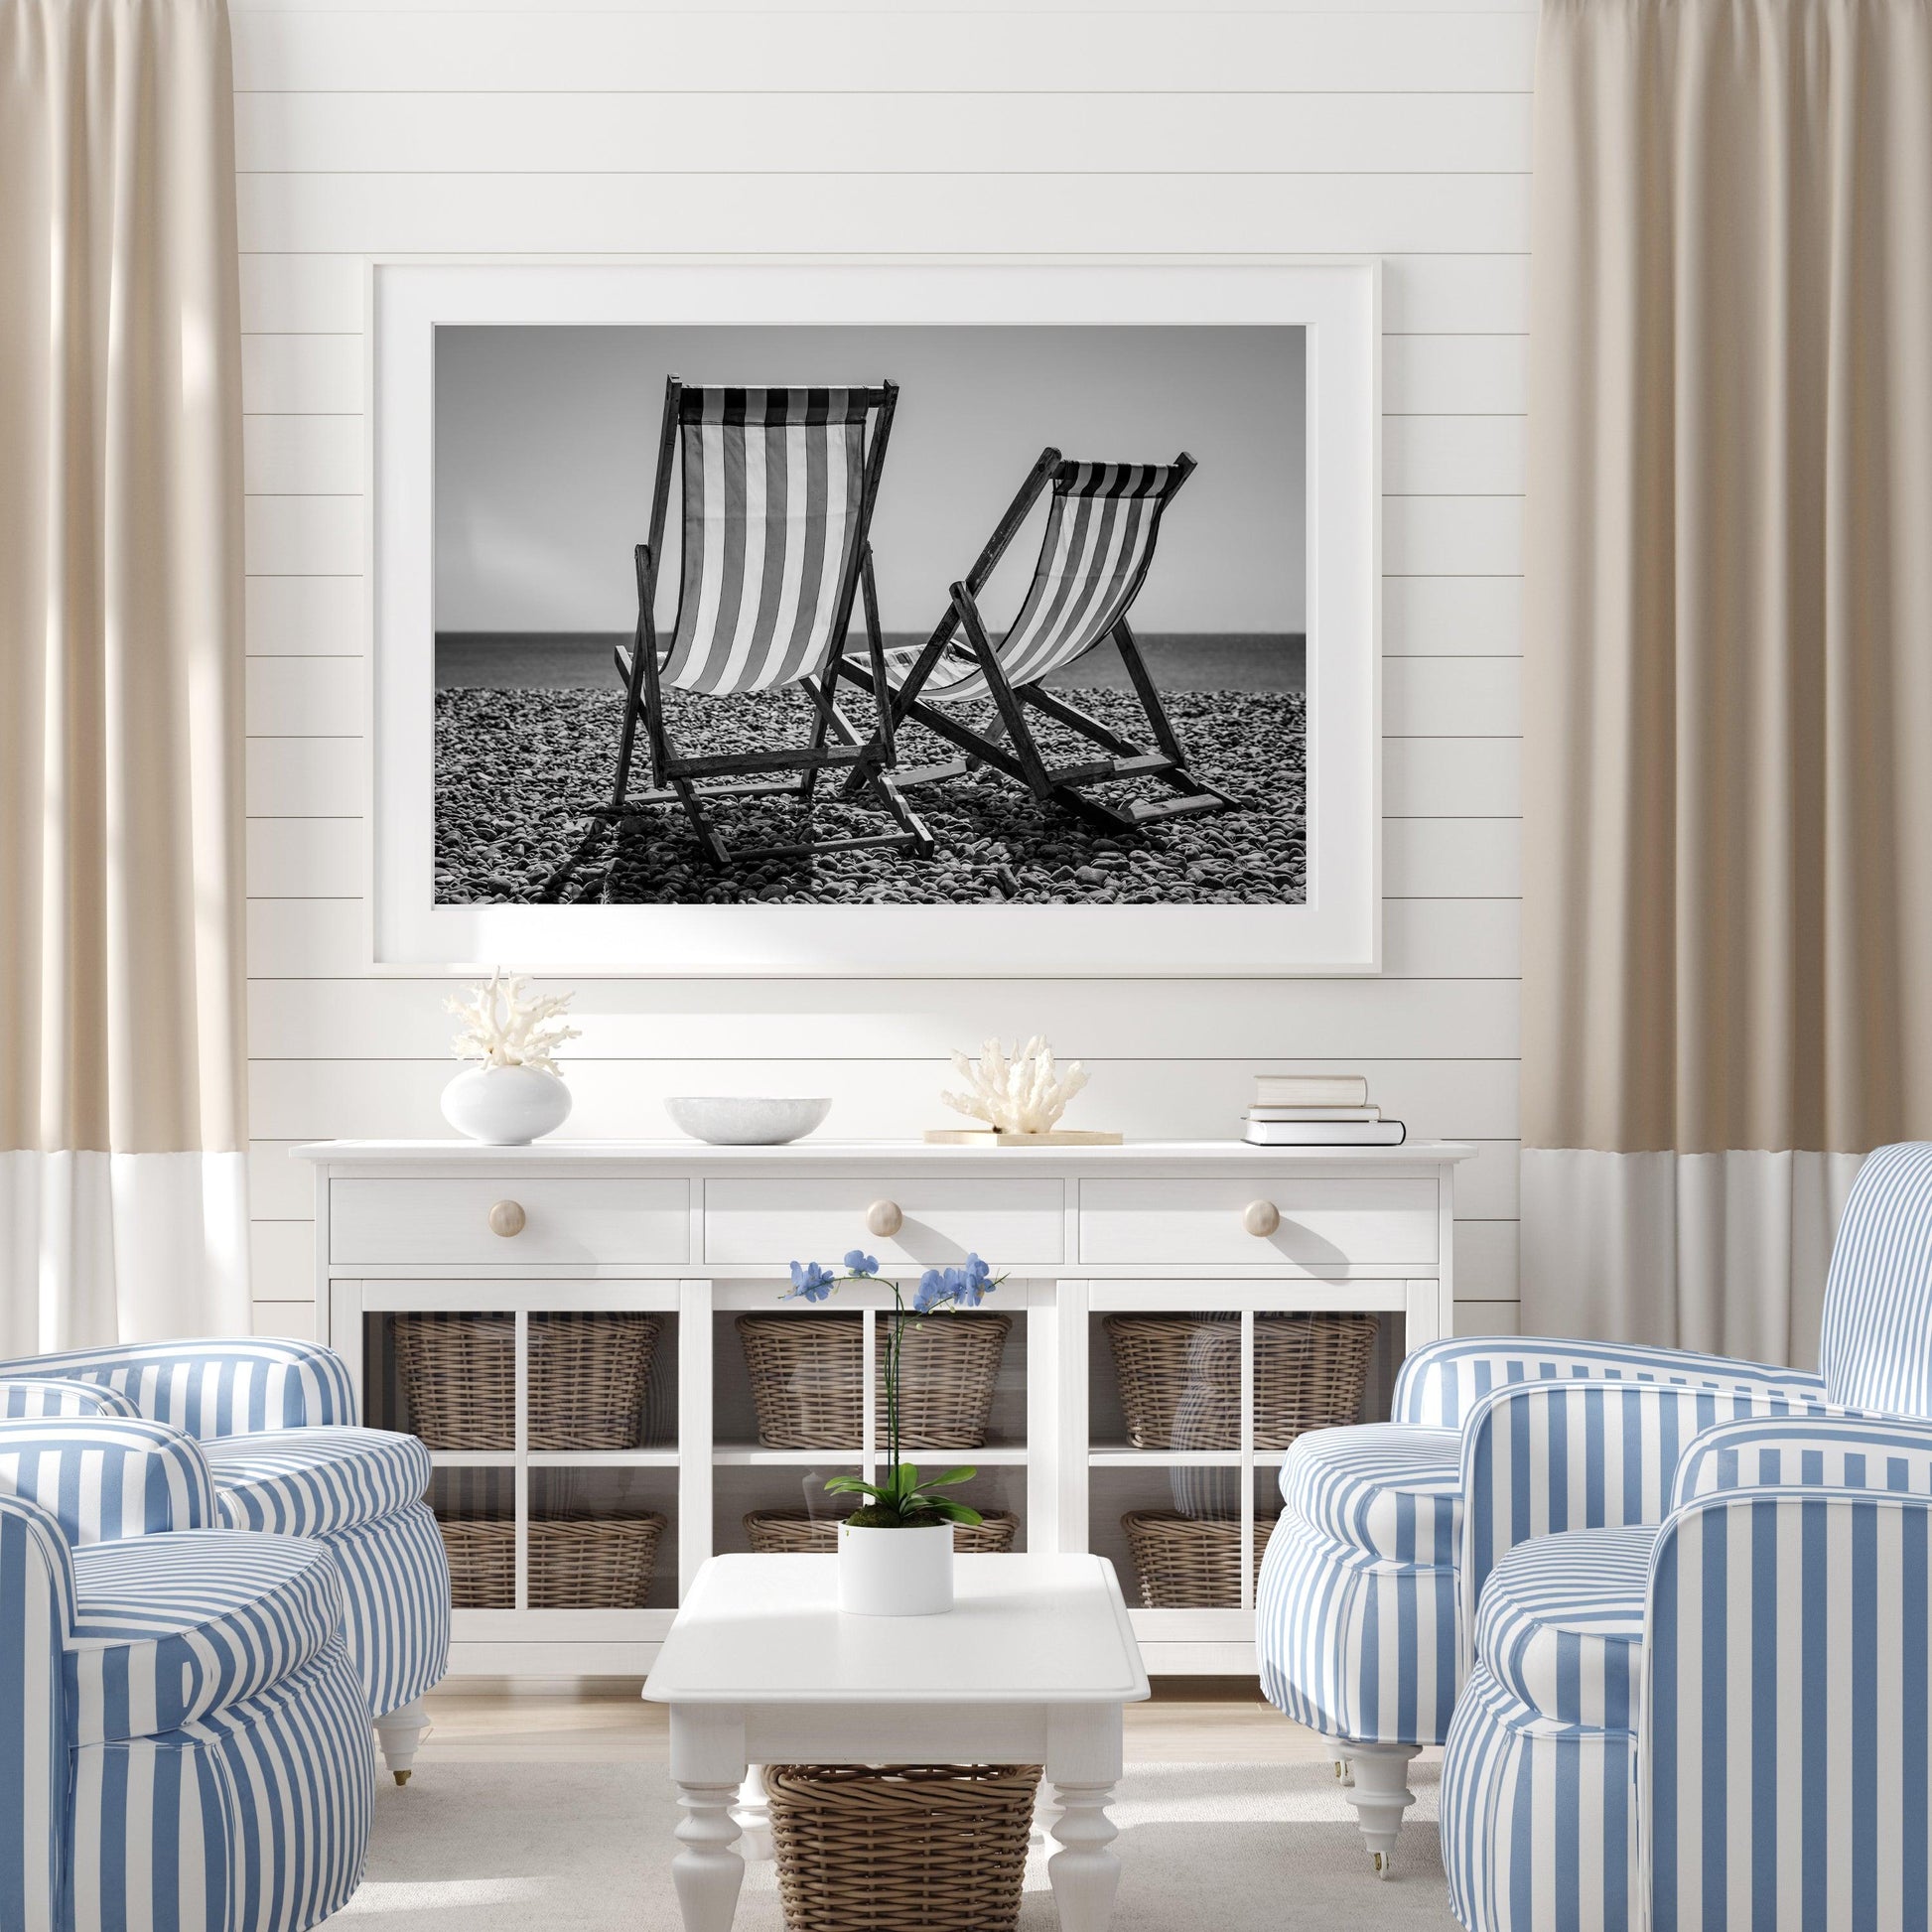 B&W Beach Chairs | Beach Print - Departures Print Shop